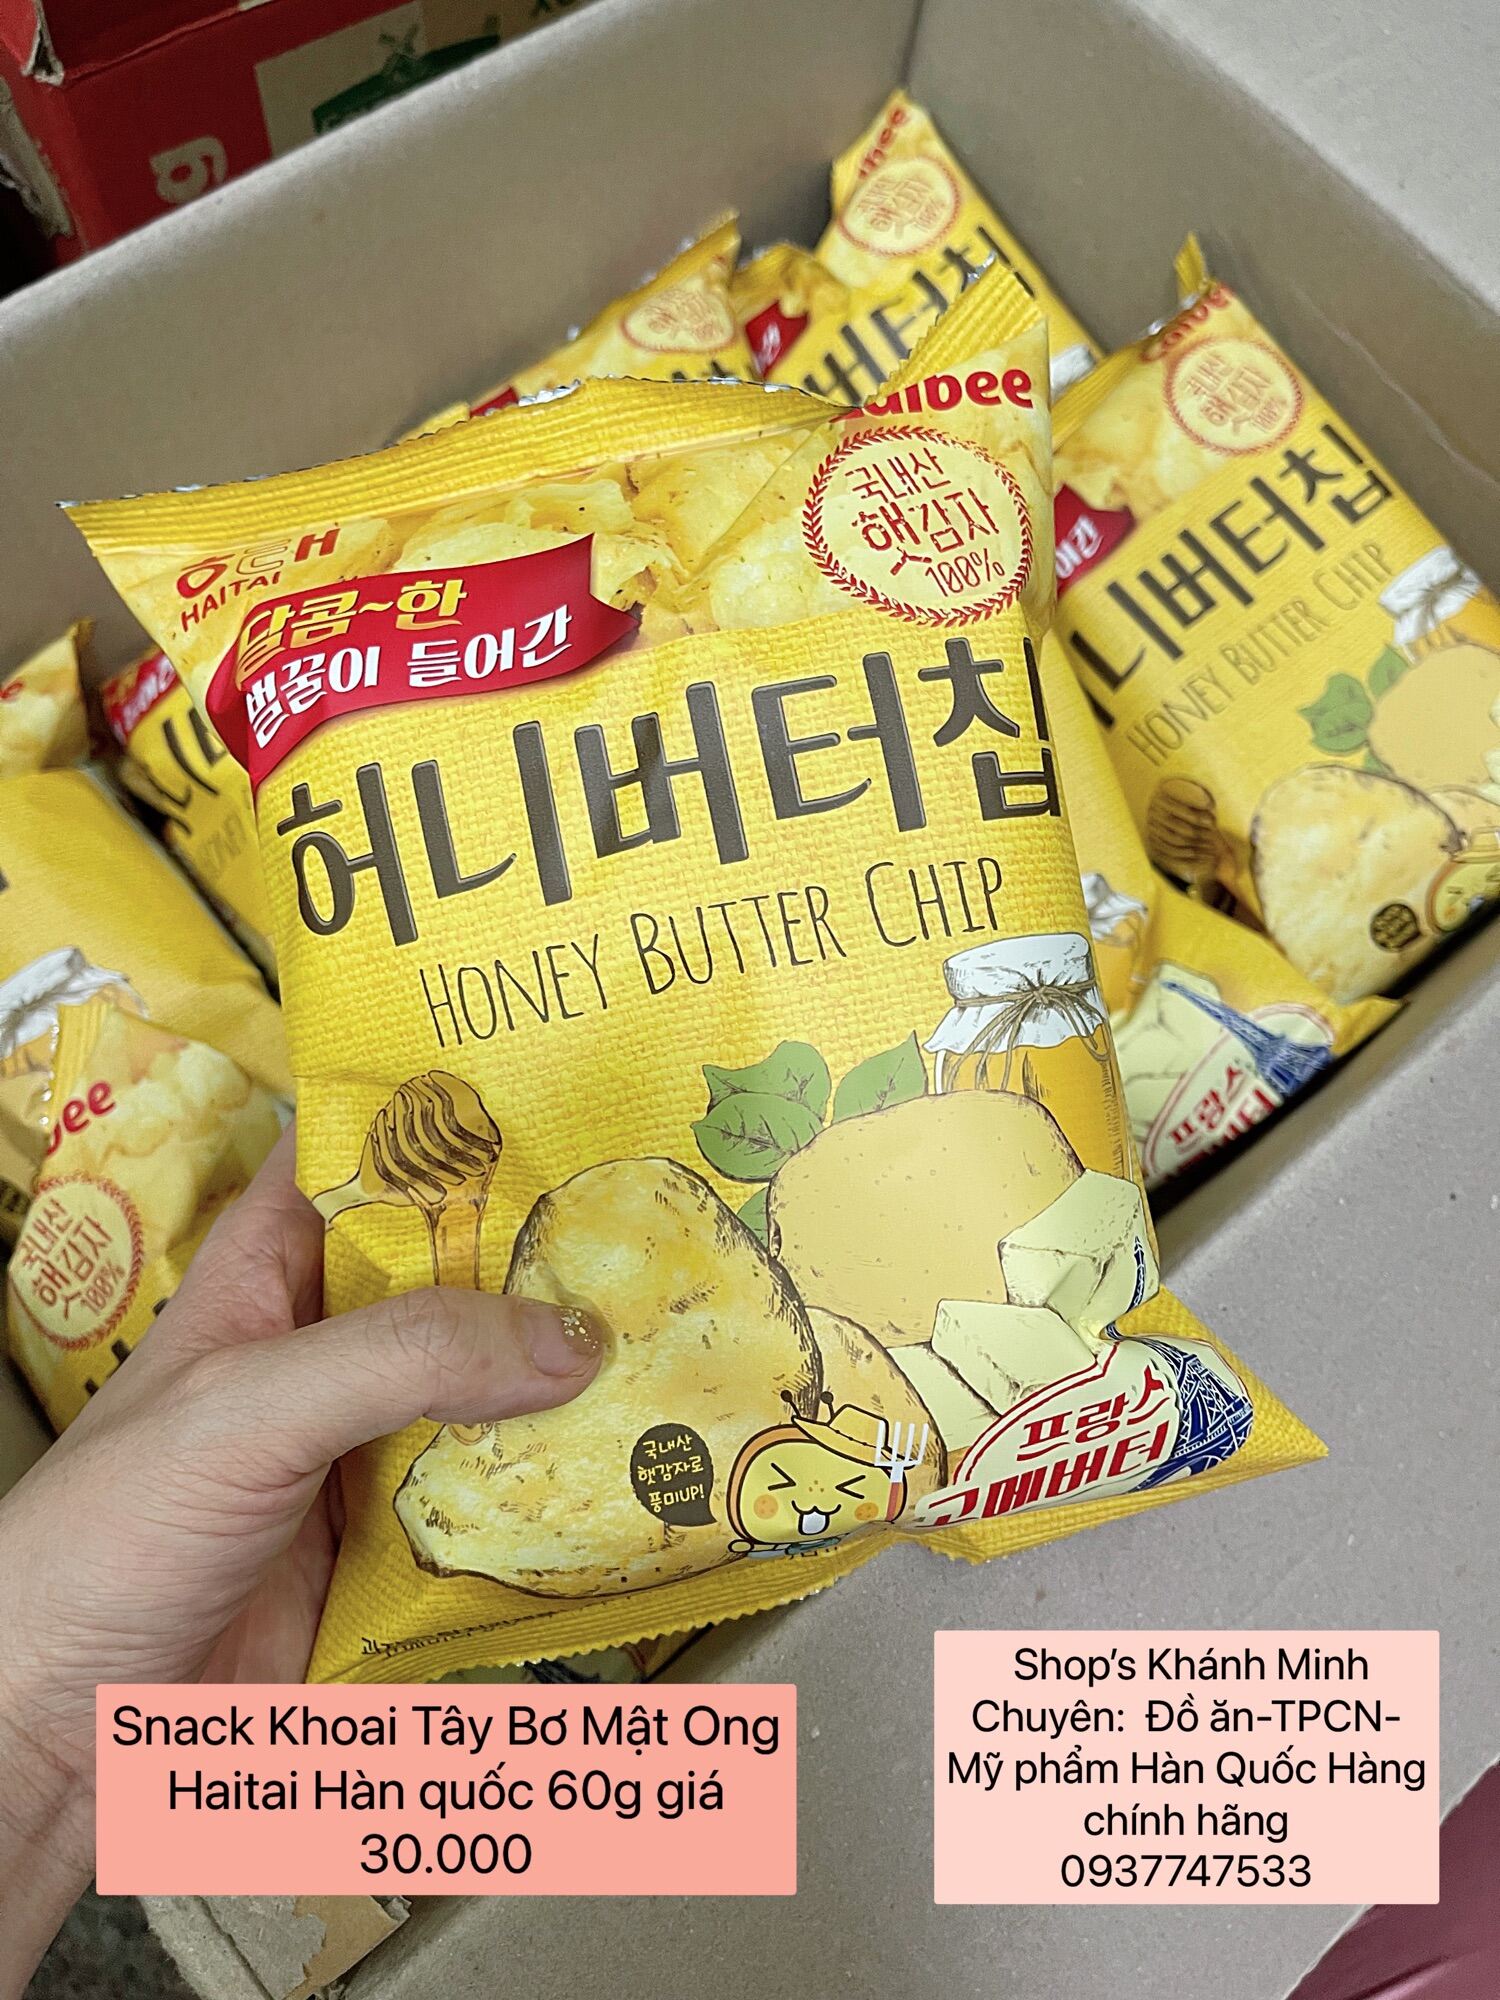 Snack Khoai Tây Bơ Mật Ong Haitai Hàn quốc 60g